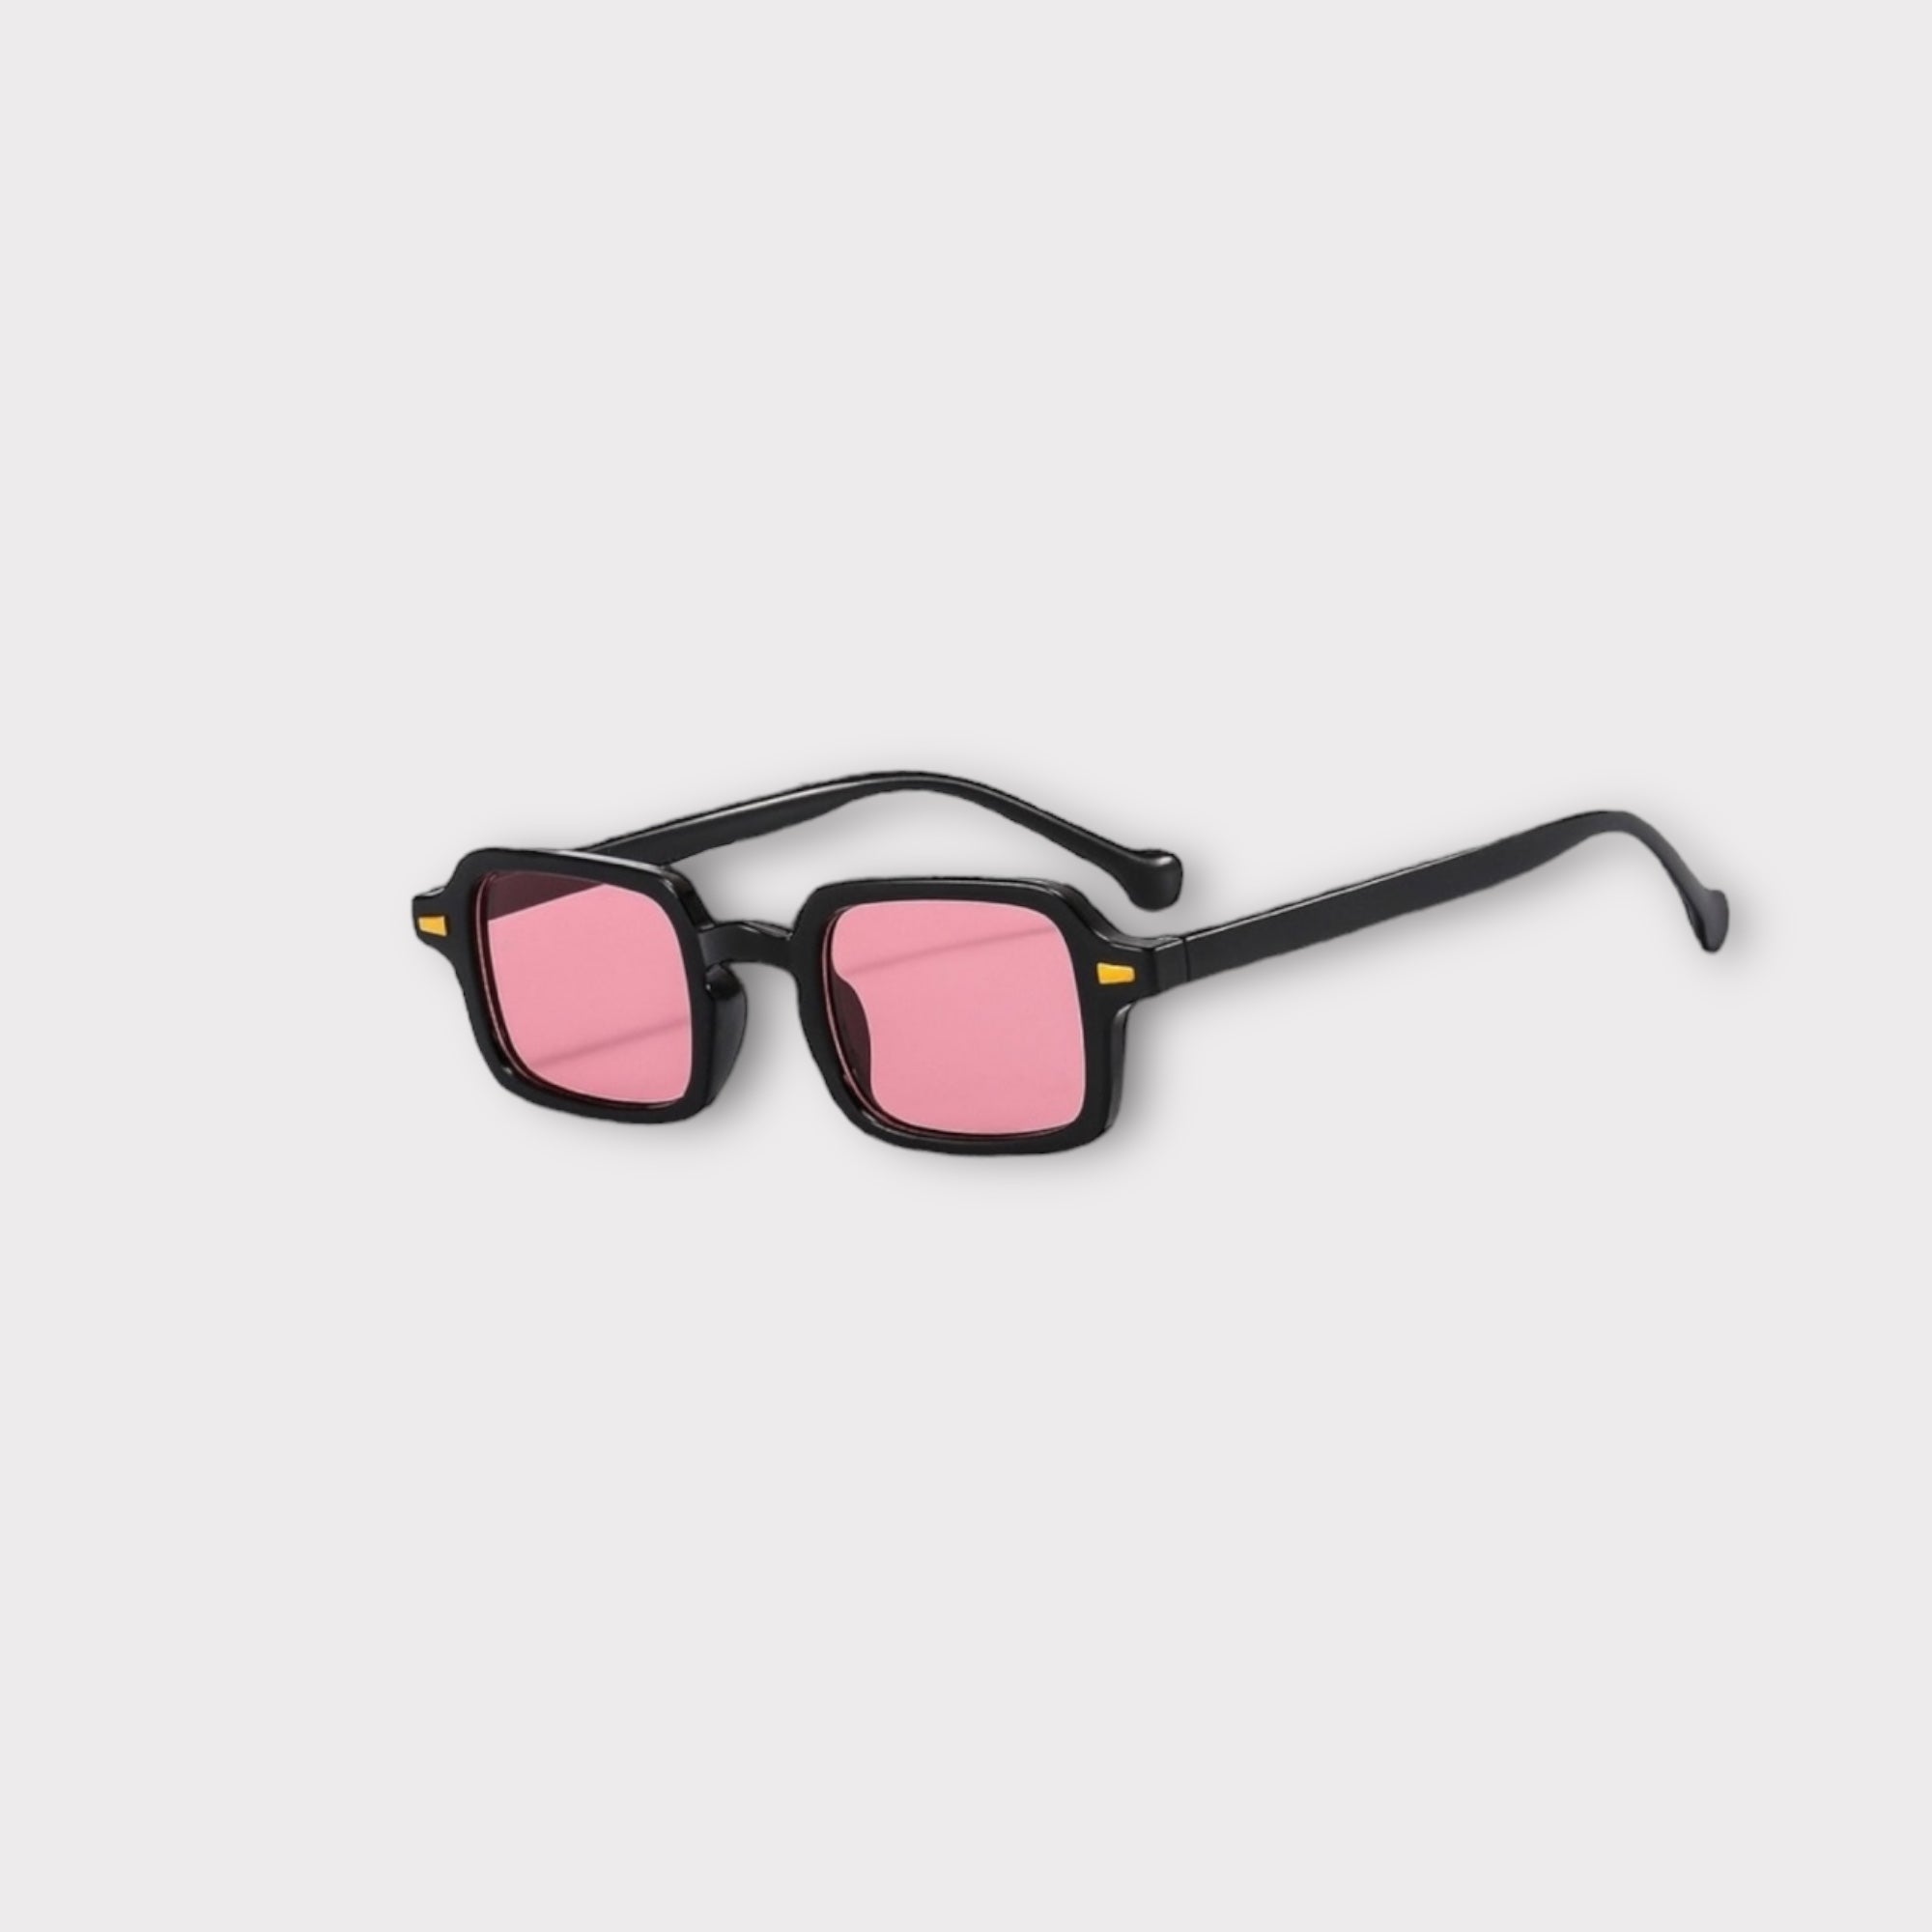 'DJYE' Luxury rectangular sunglasses for women